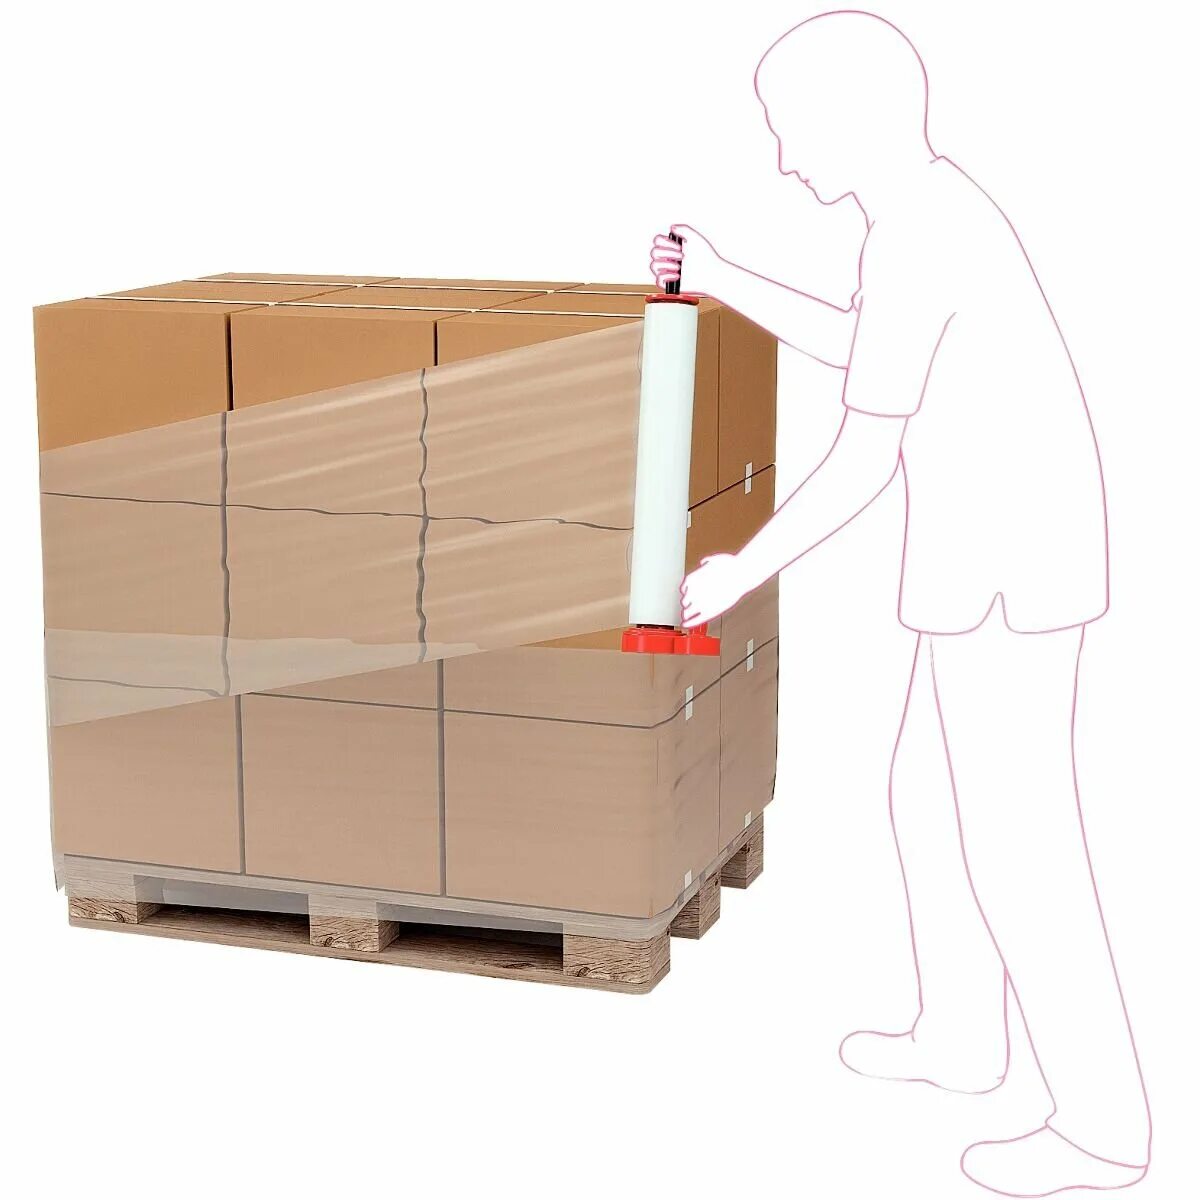 Укладка паллет. Упаковка грузов для транспортировки. Упаковка паллет. Упаковка груза на паллетах. Упаковка палеты с коробками.